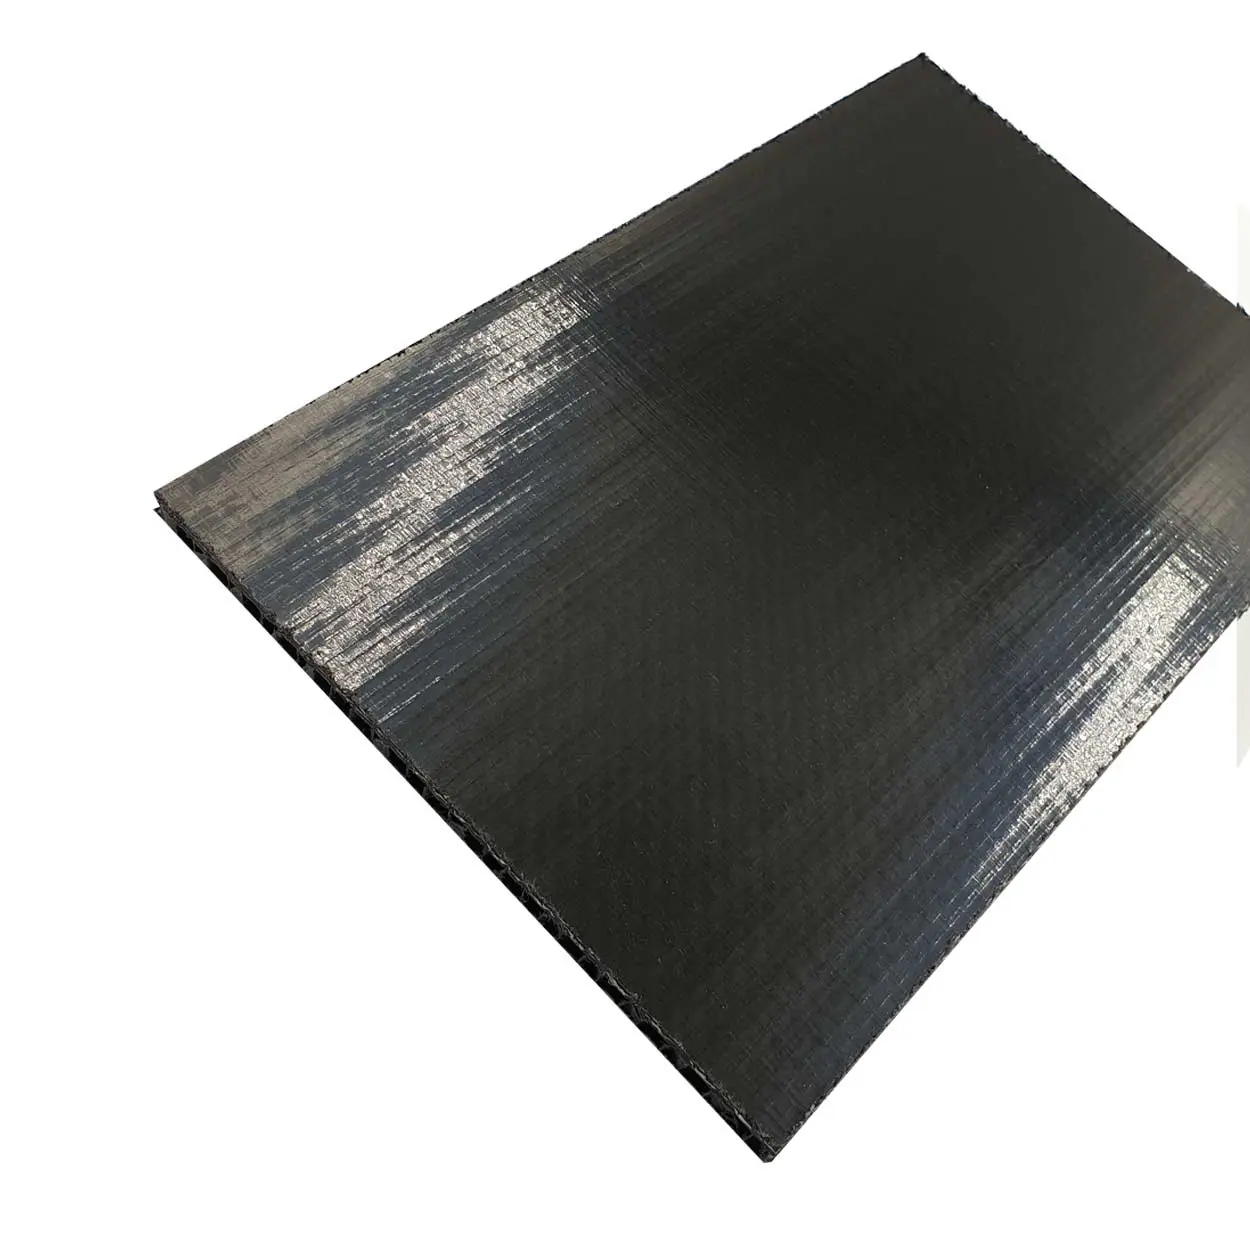 Panneau contreplaqué surface PVC vinyle de couleur - Eurocase